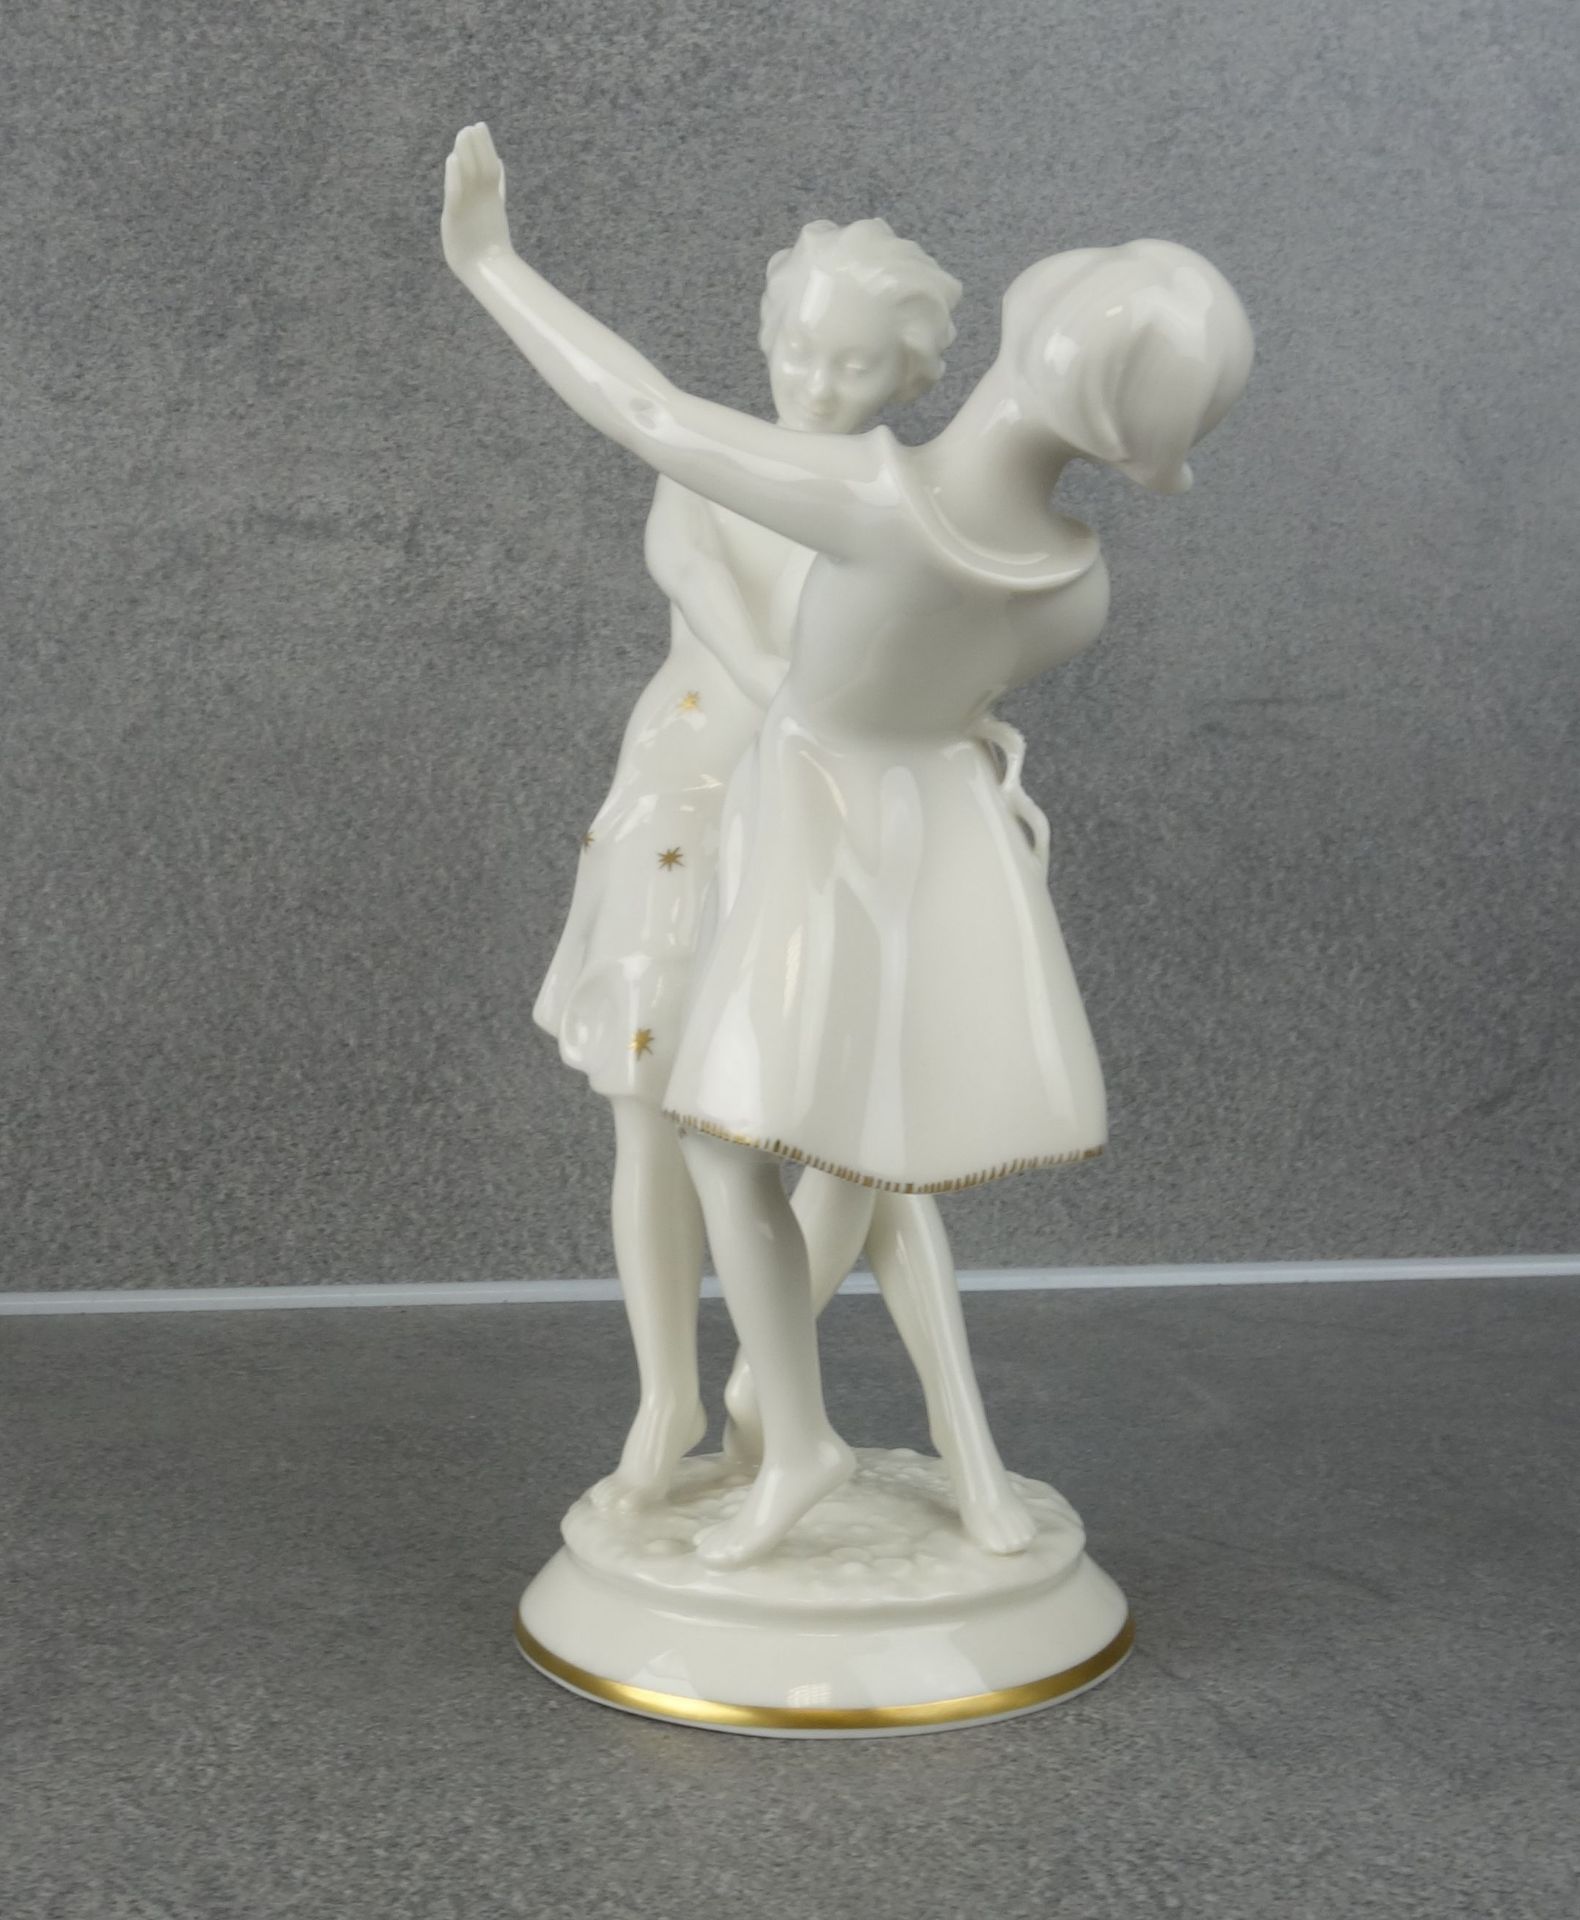 CARL WERNER PORCELAIN FIGURES: "DANCING GIRLS" - Image 4 of 5